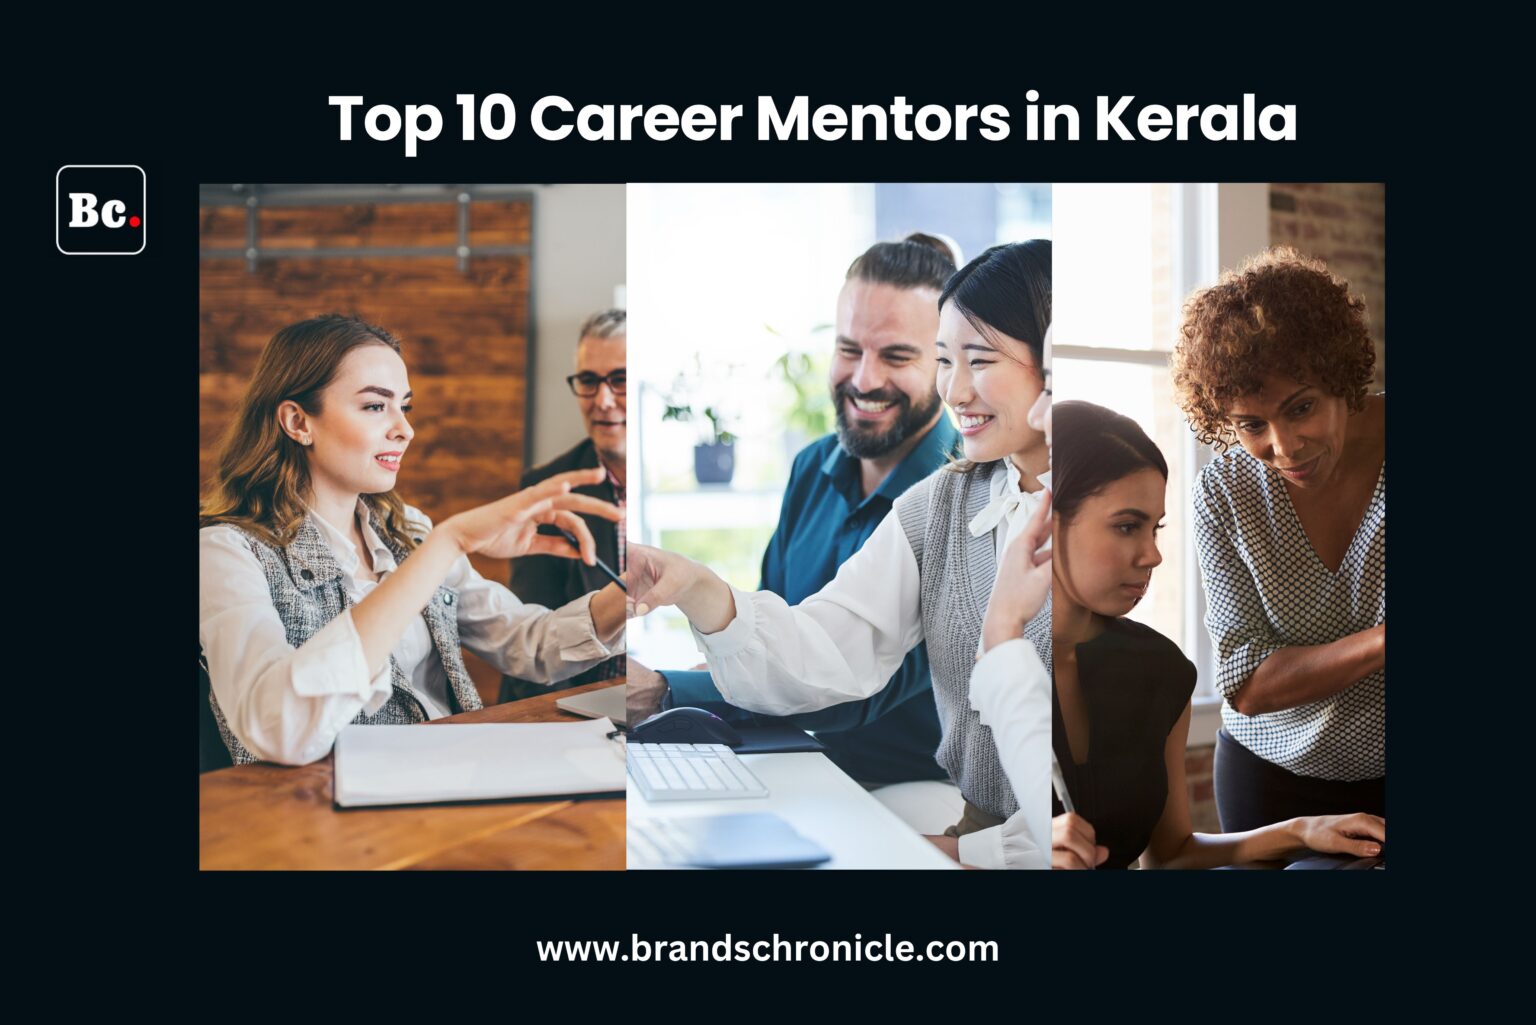 Career mentors in kerala